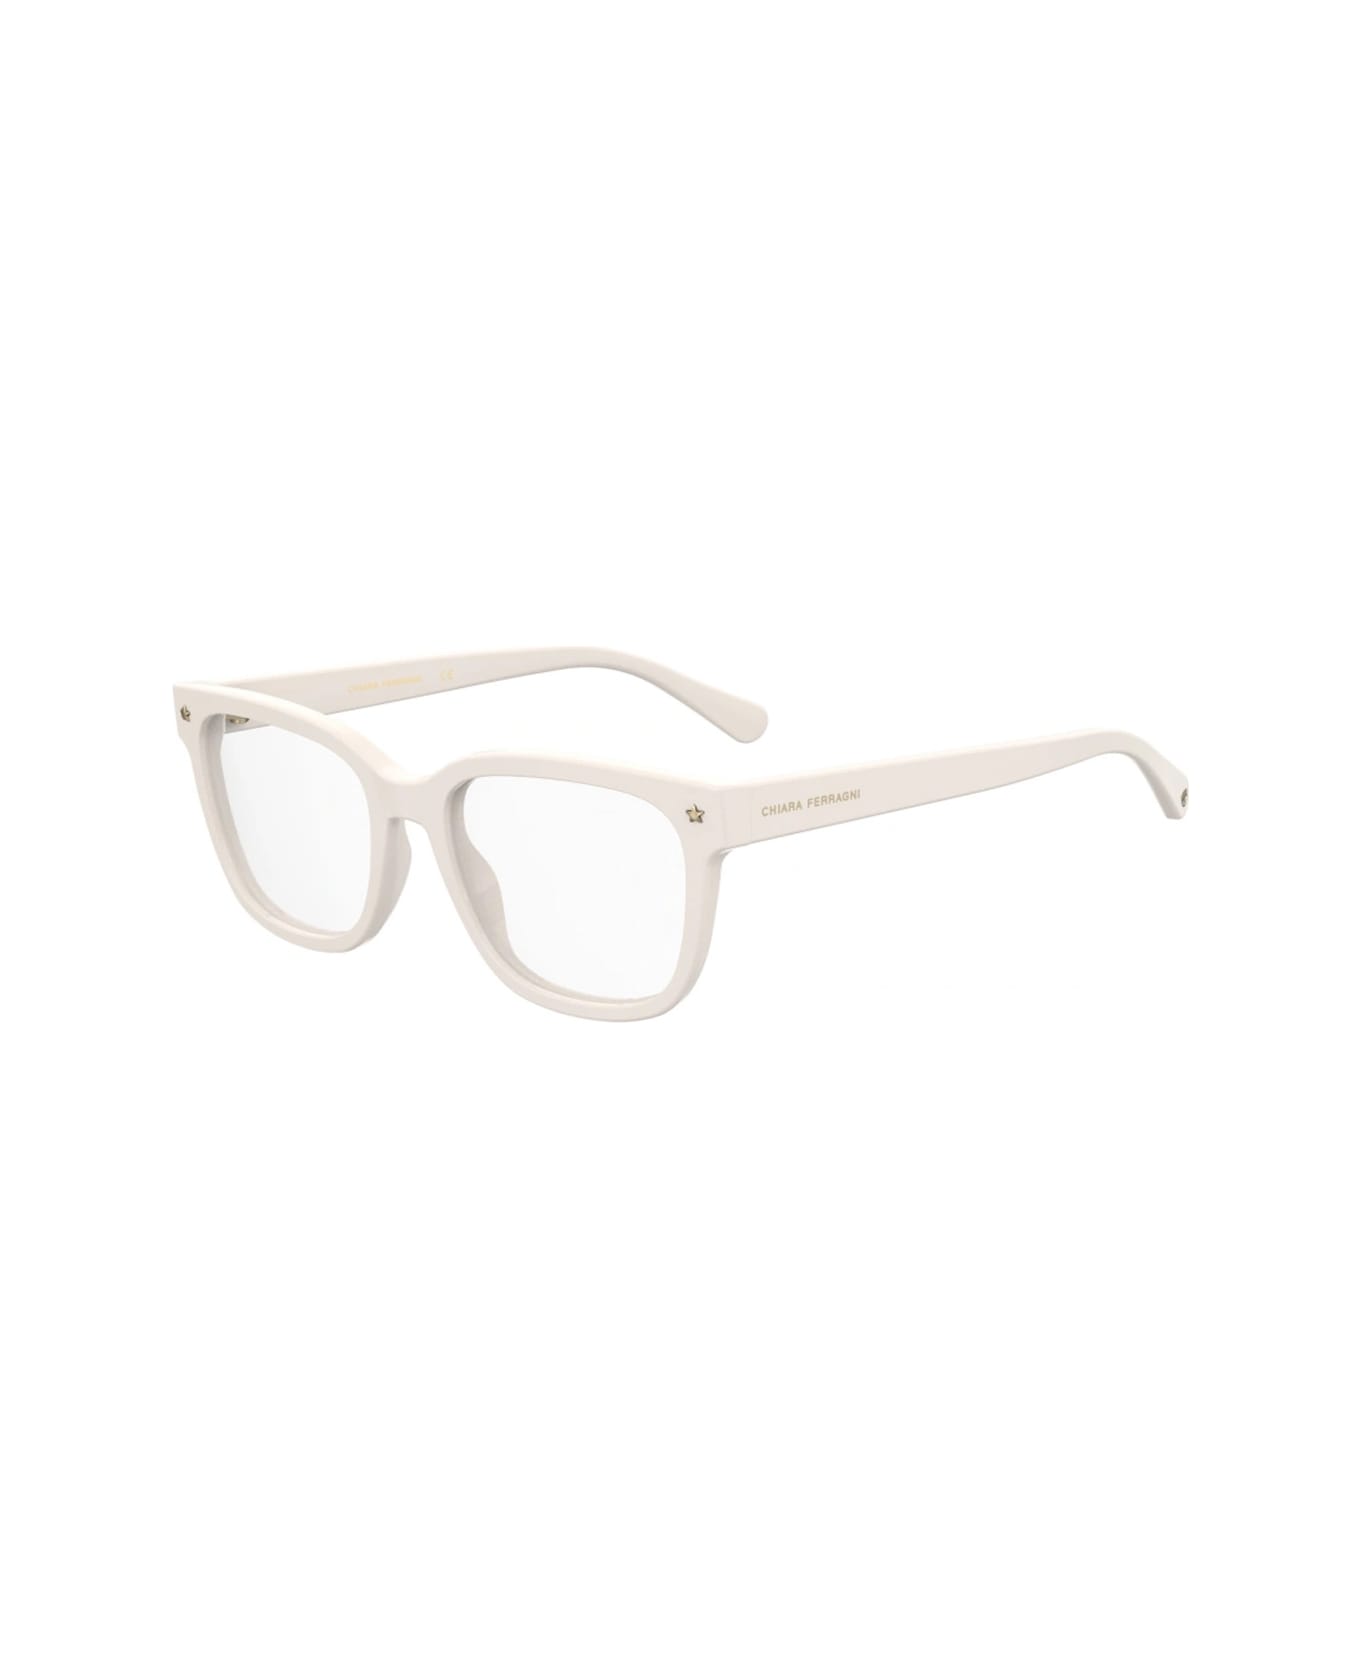 Chiara Ferragni Cf 7027 Vk6/18 White Glasses - Bianco アイウェア